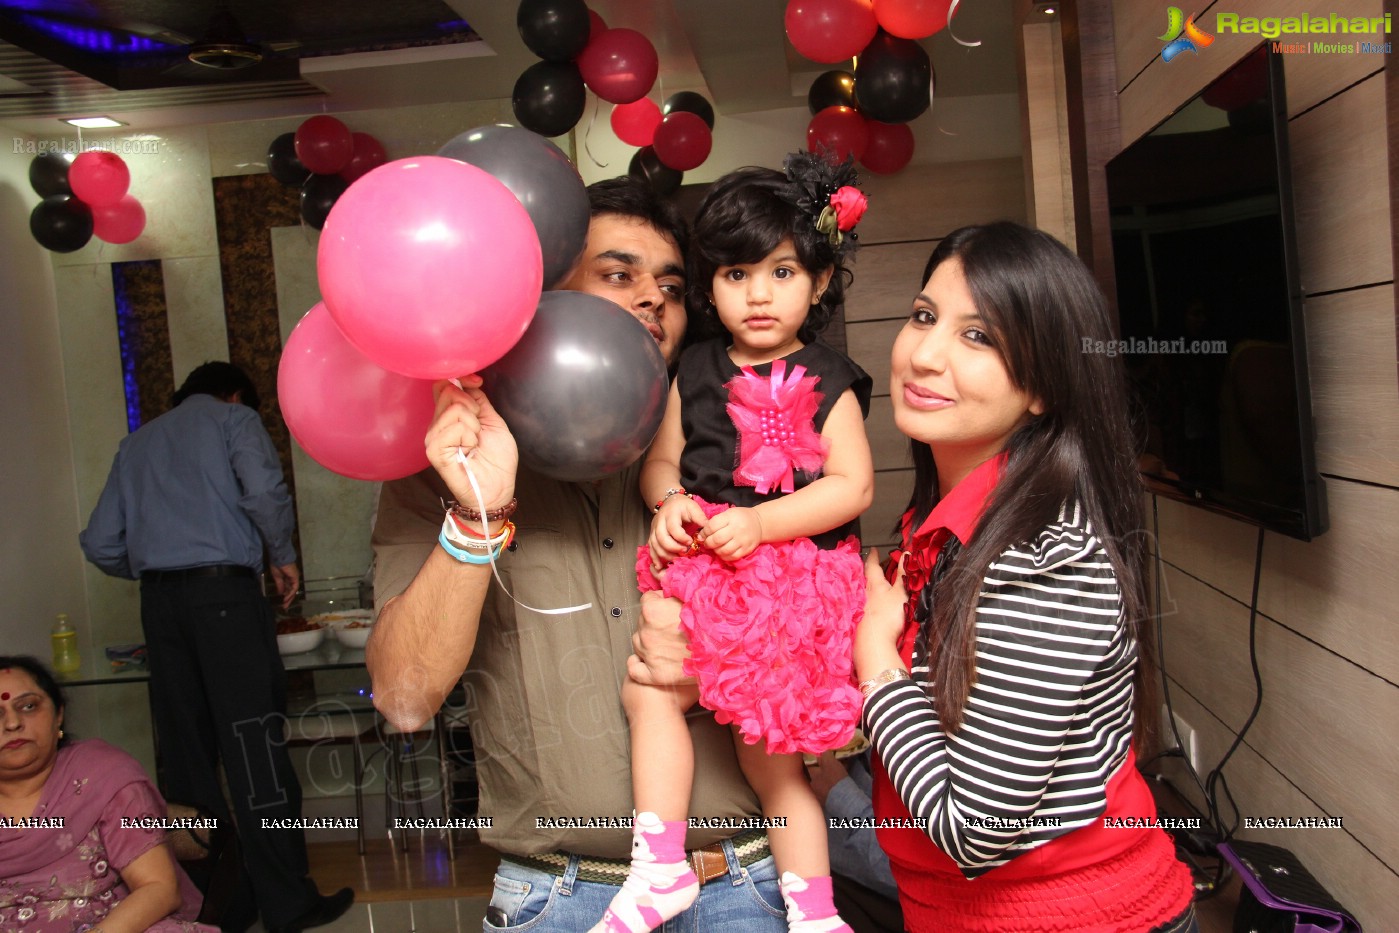 Maisha's 2nd Birthday Party - Hosted by Sobti Family